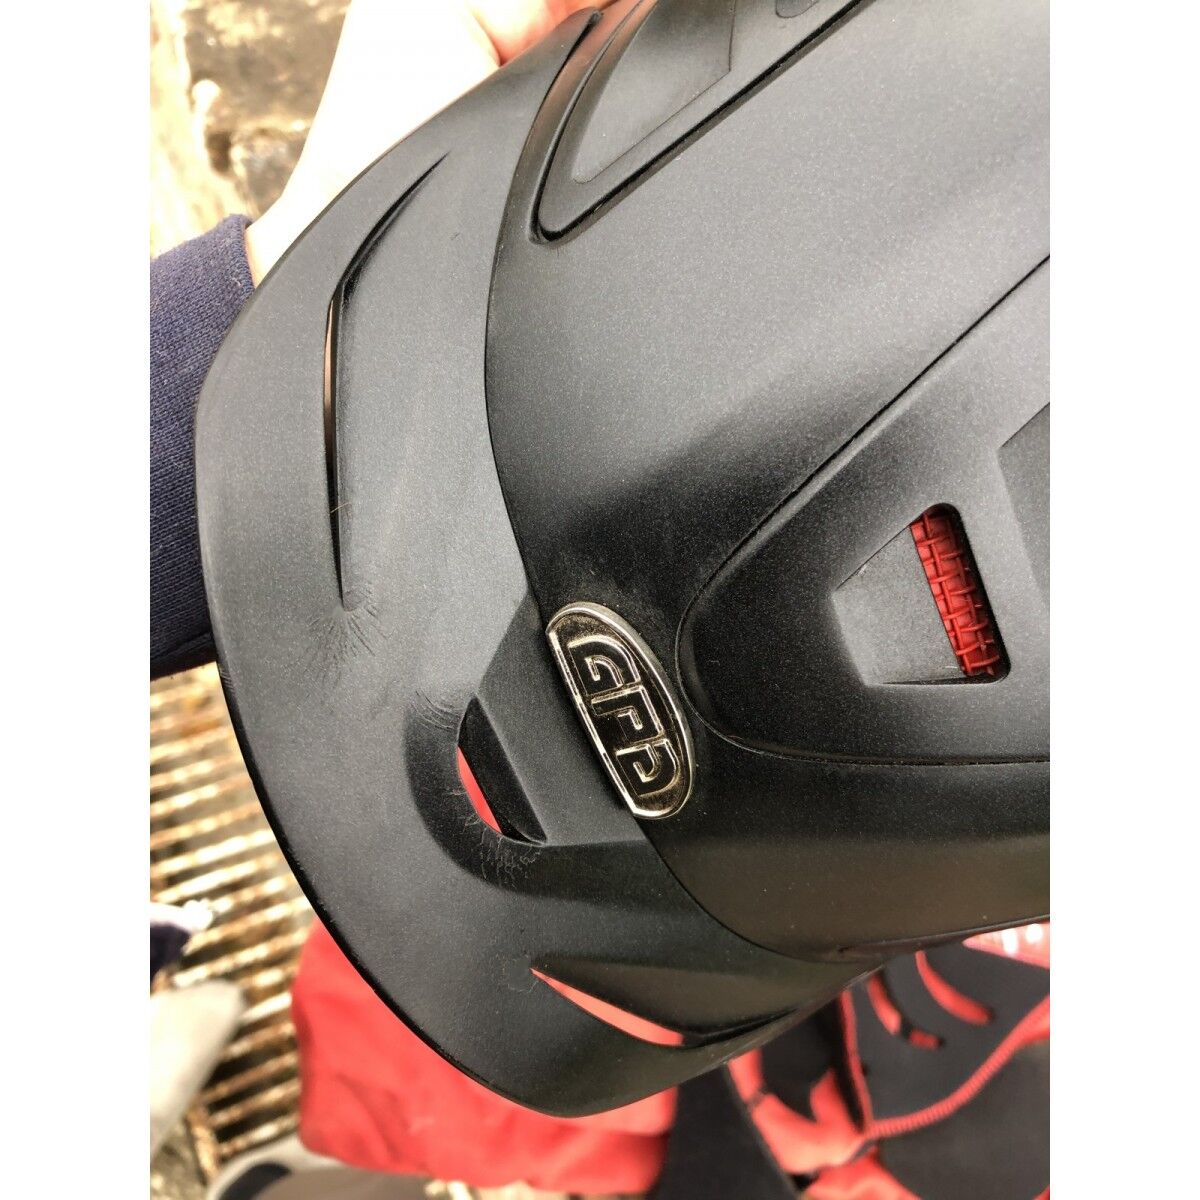 GPA casque d'équitation Speed Air 4S mat - noir